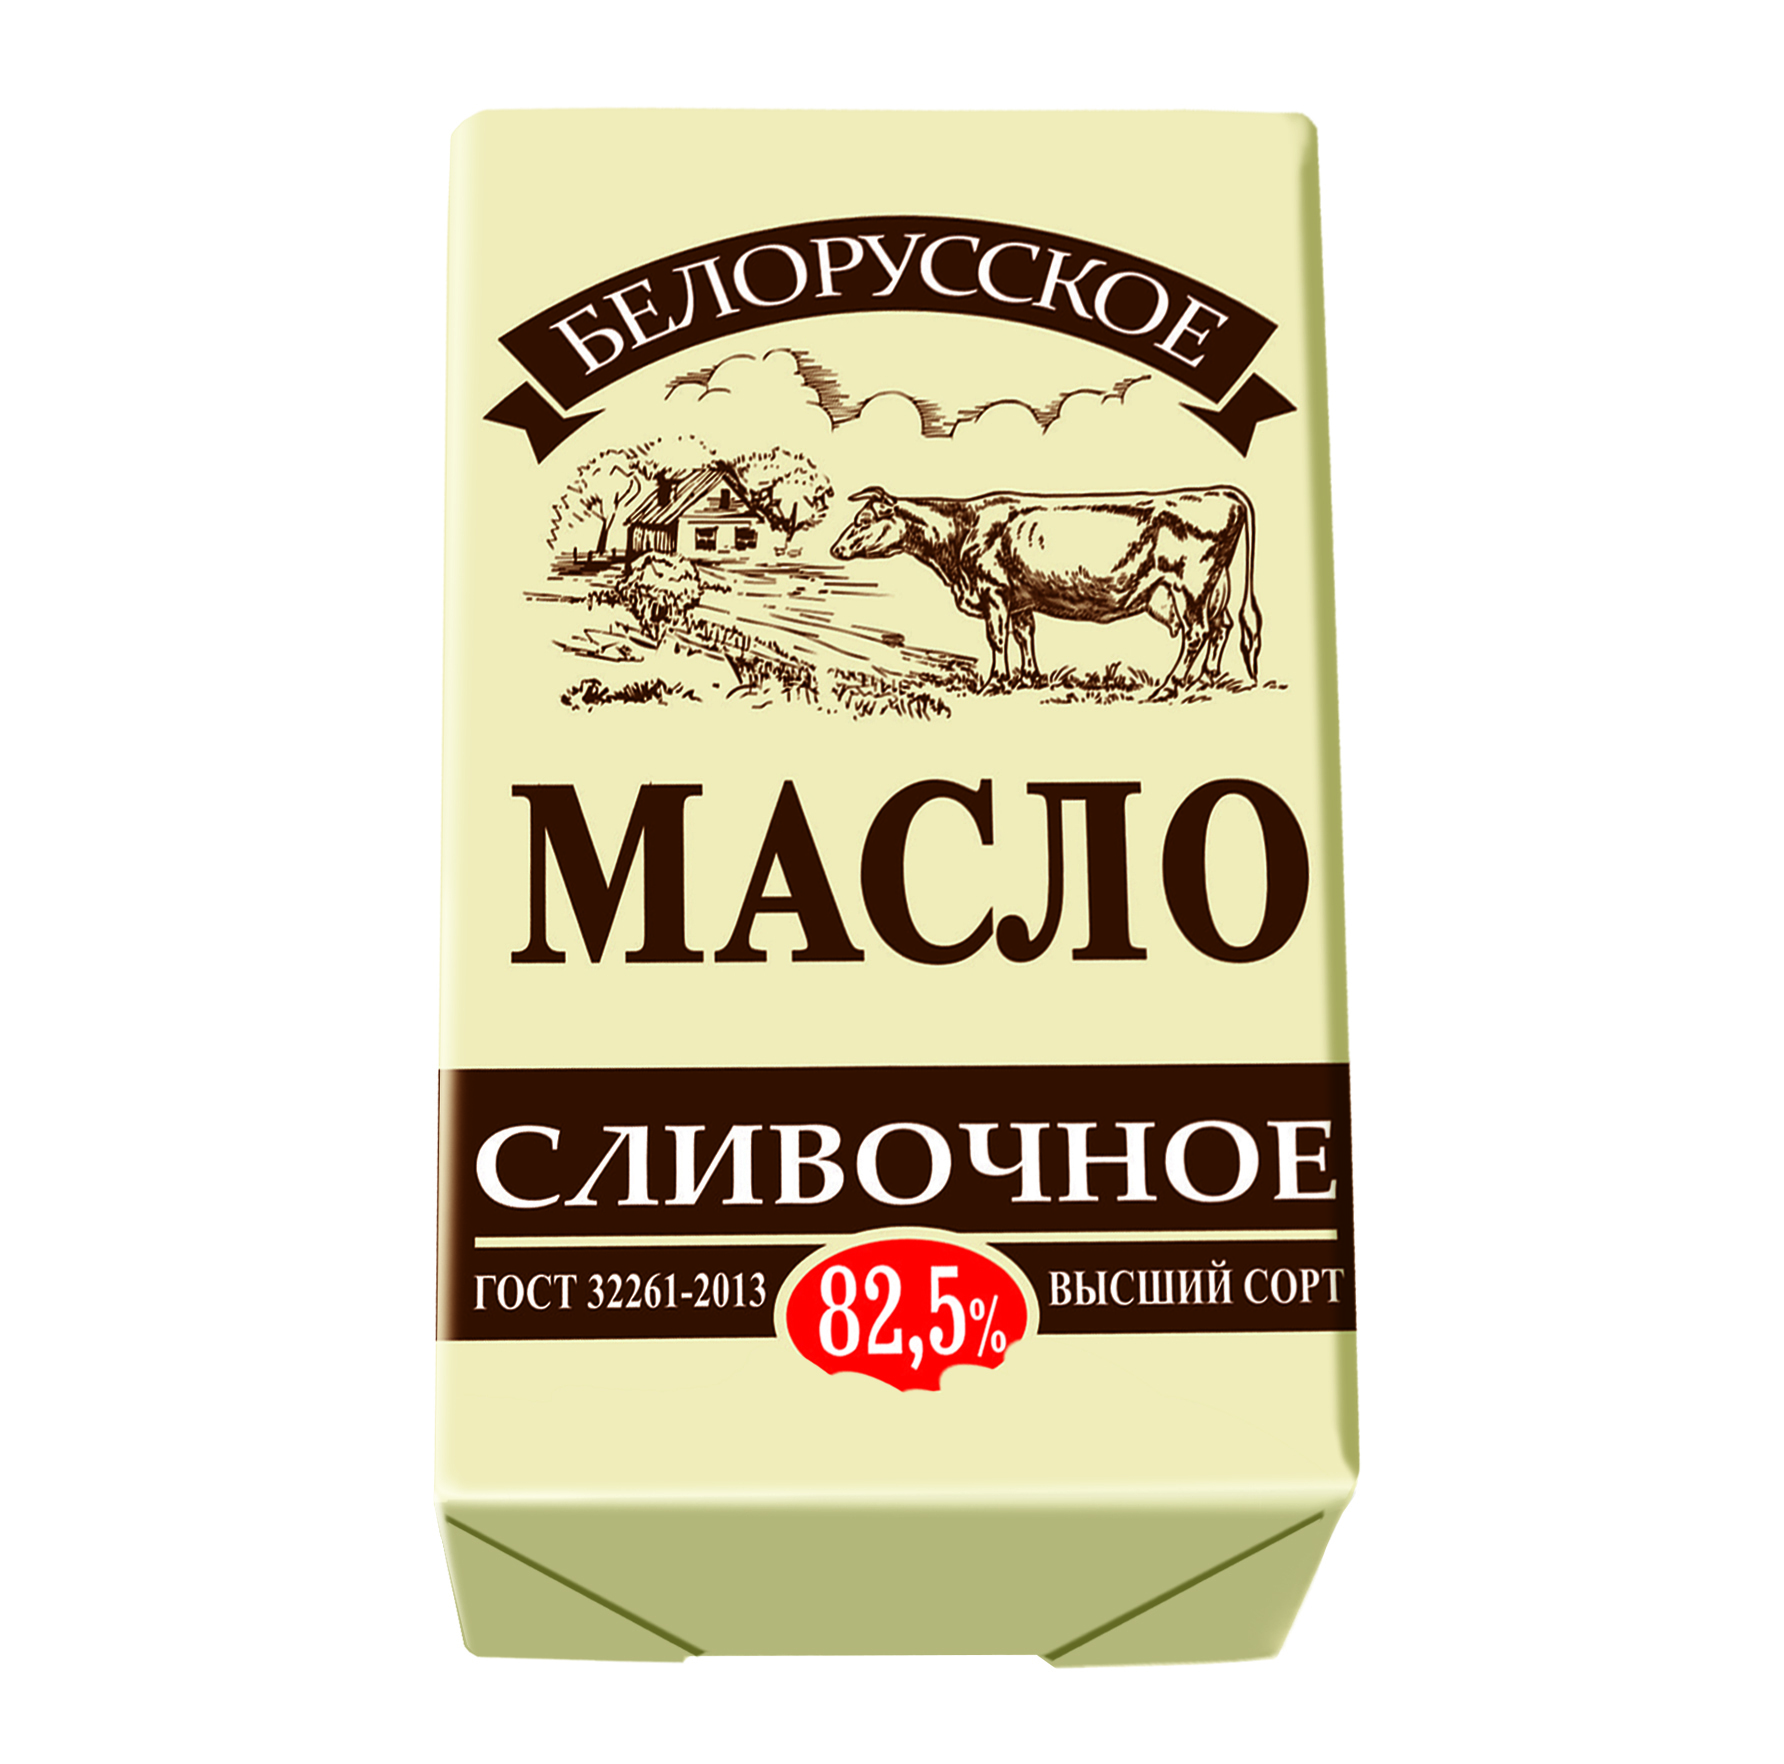 Масло сливочное. Масло сливочное белорусское. Белорусское видно масло сливочное. Масло Слуцкое 82.5 сливочное белорусское. Масло беларусь 82.5